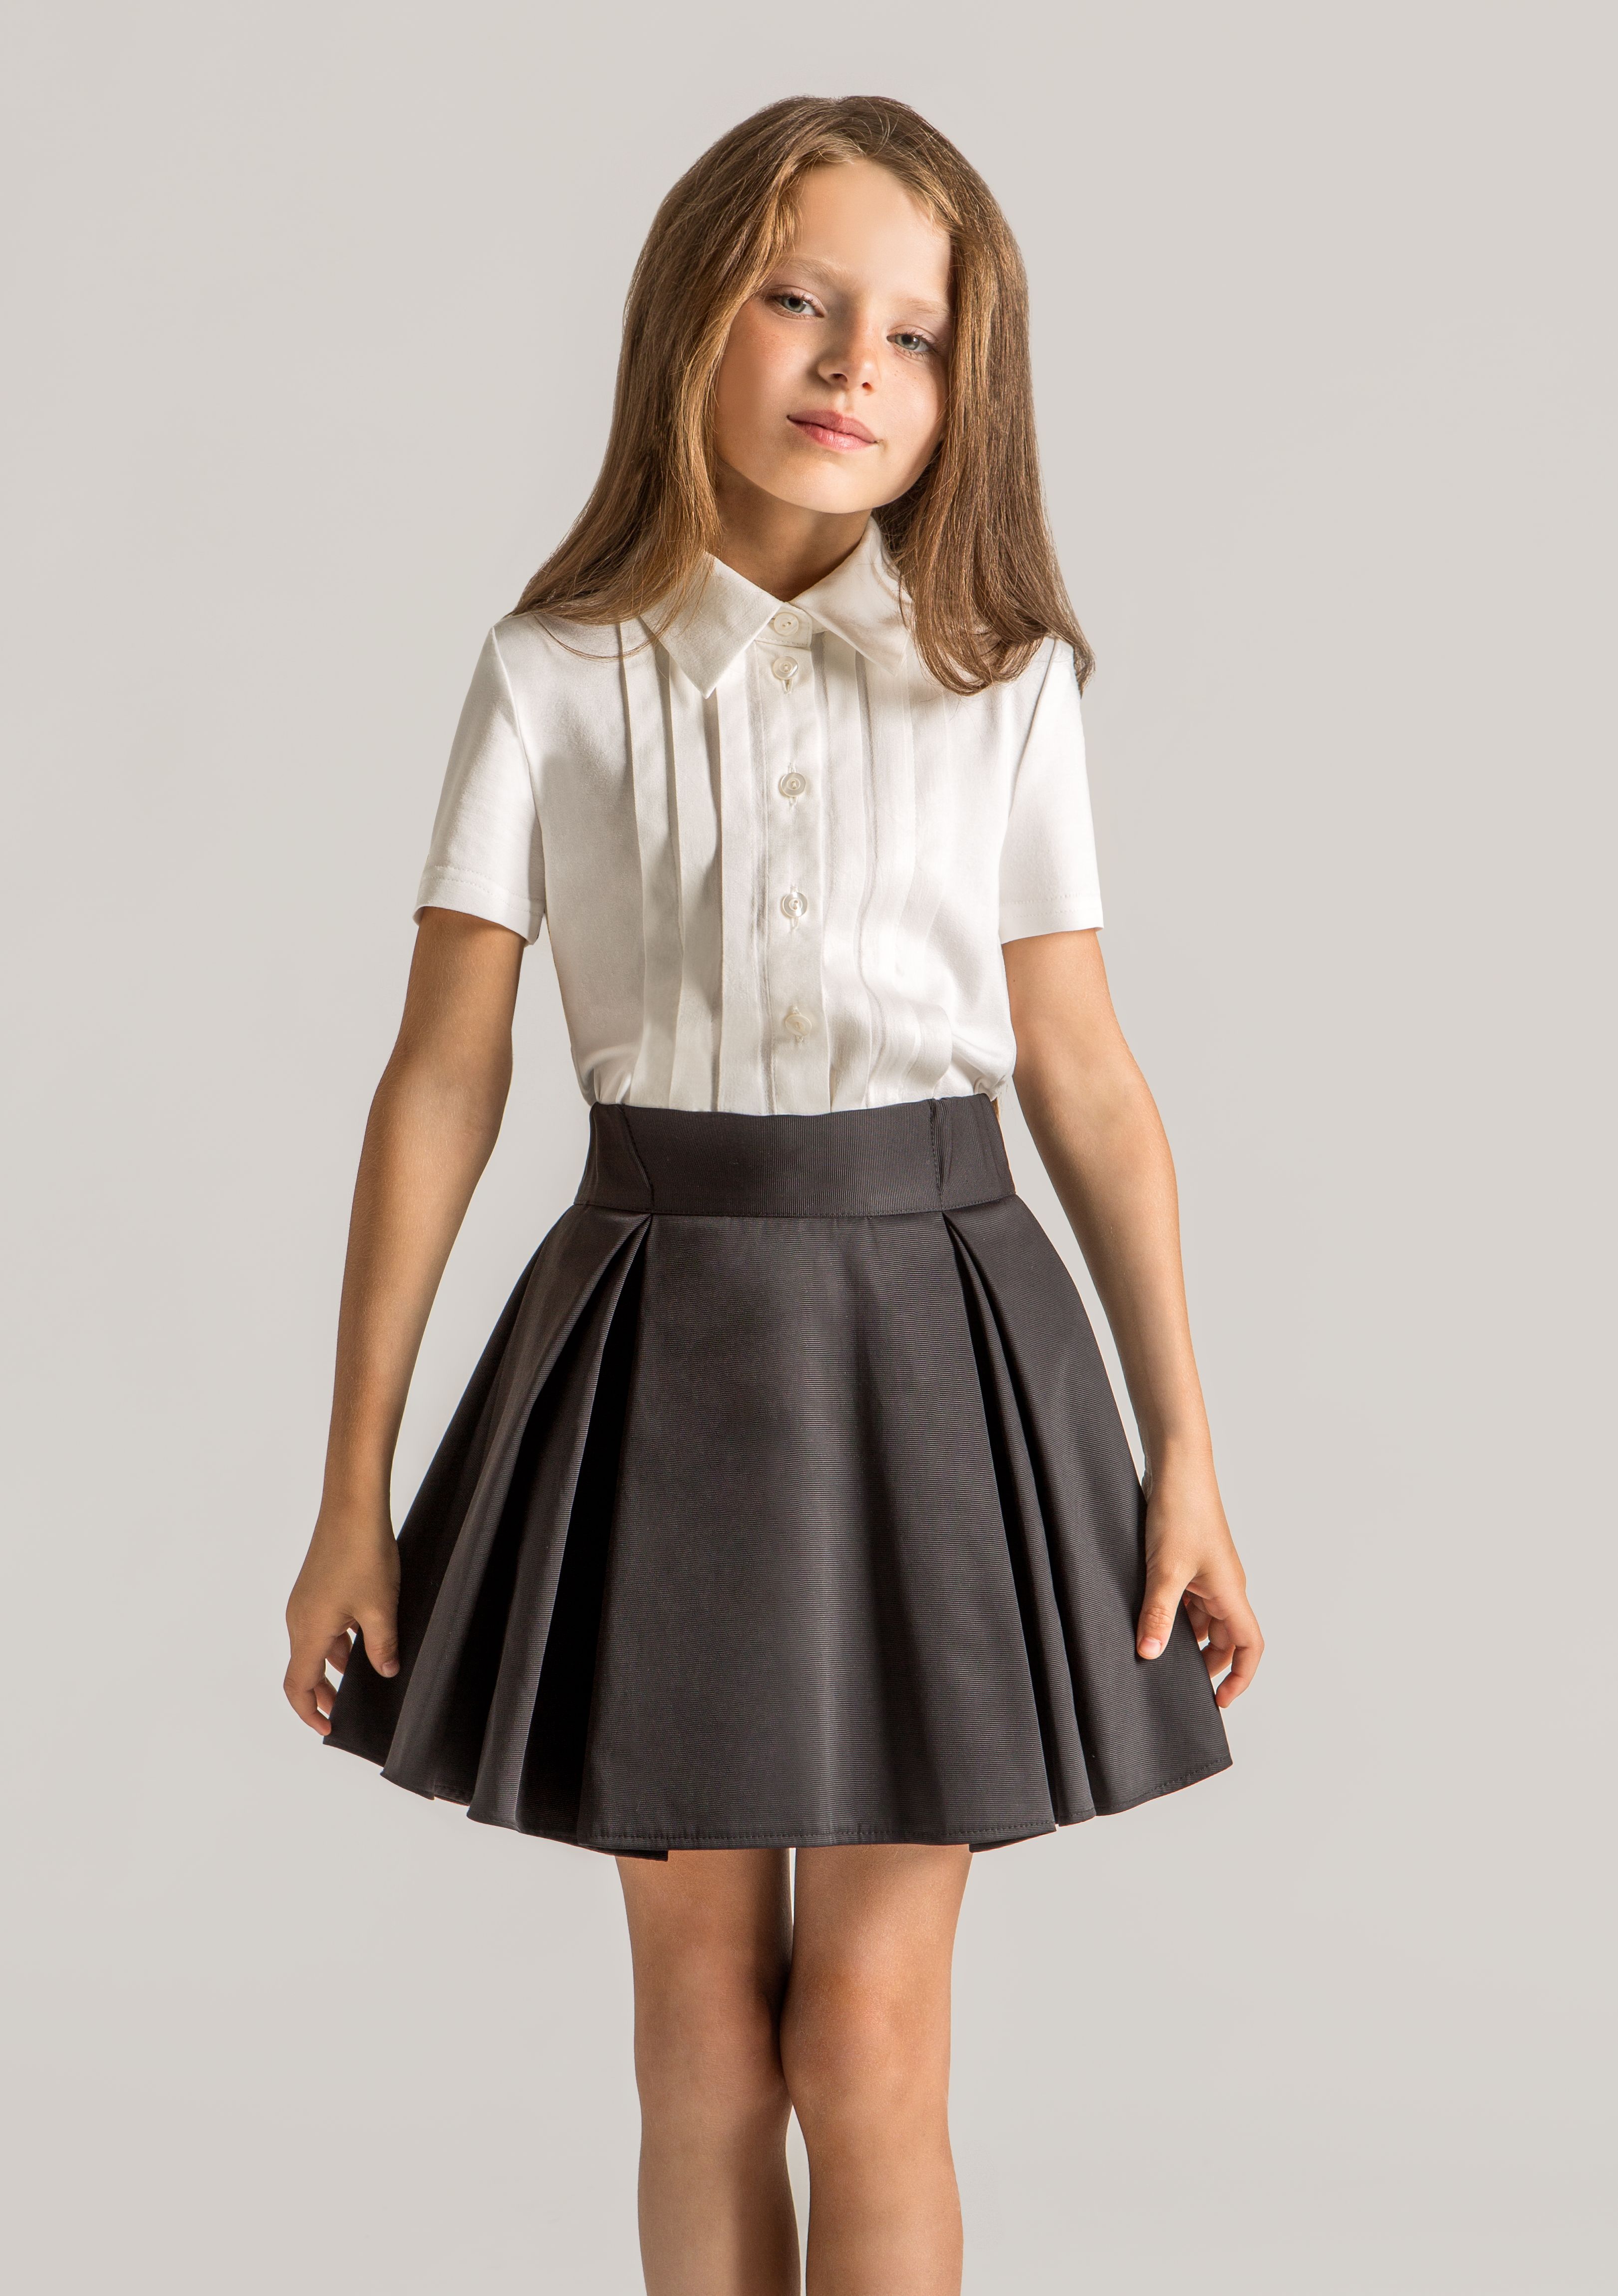 Модные школьные юбки для девочек